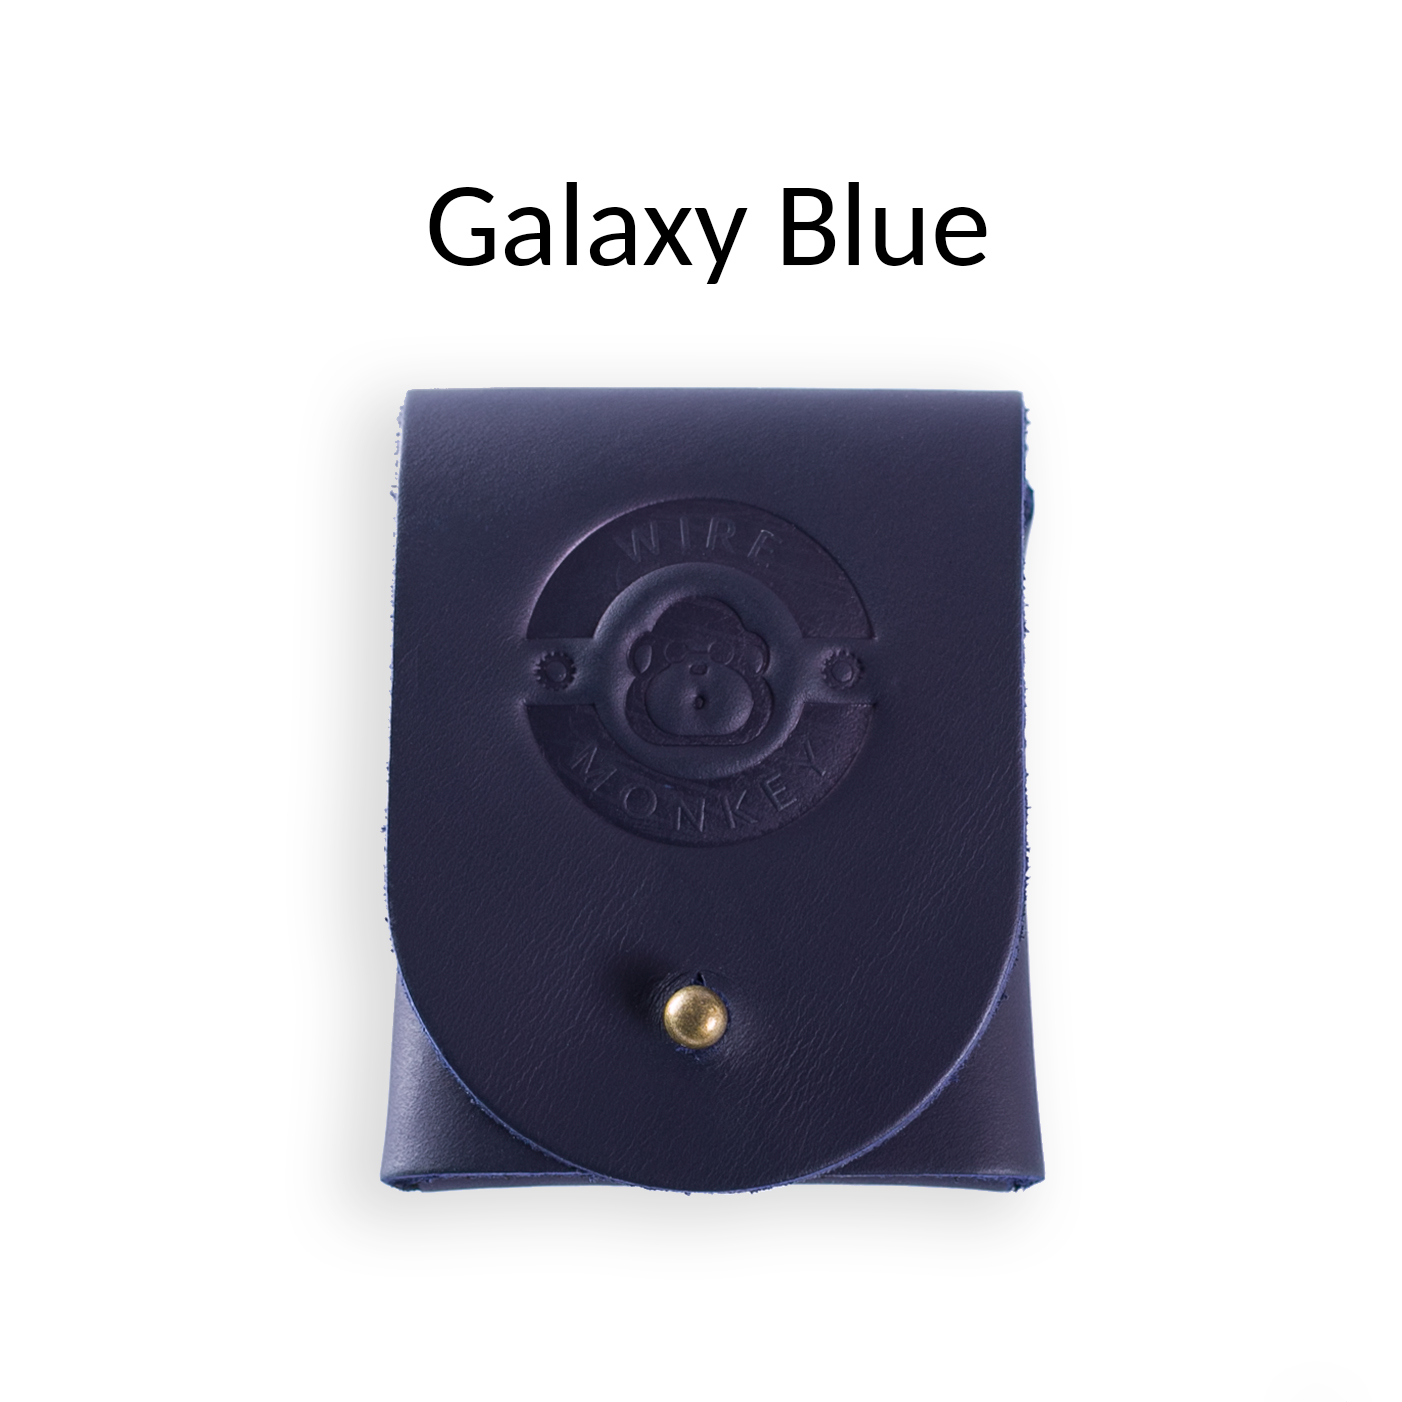 Produktbild Pouch (zur Aufbewahrung für UFO) Wiremonkey  Farbe Galaxy Blue